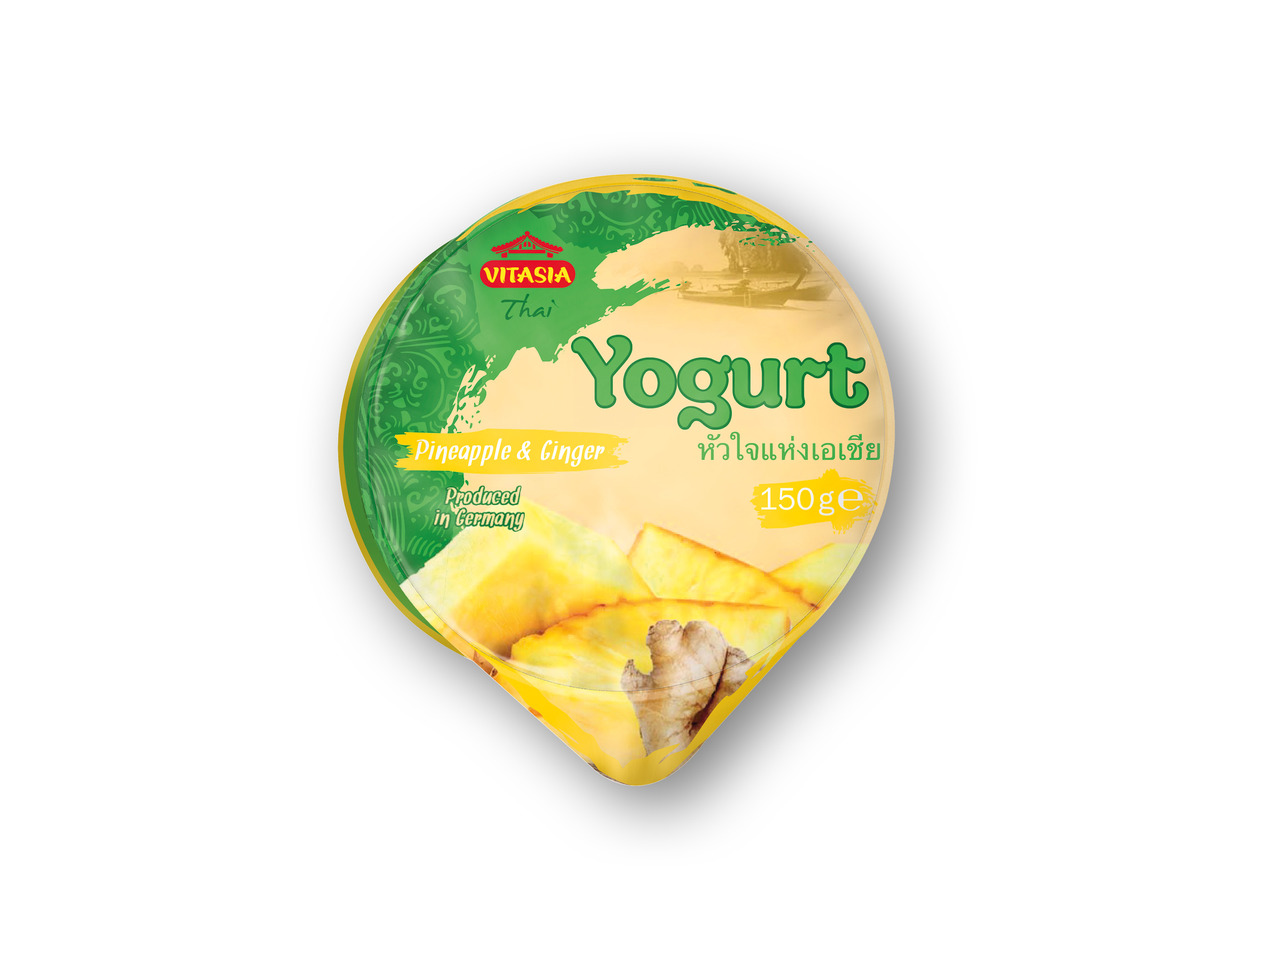 VITASIA Yoghurt